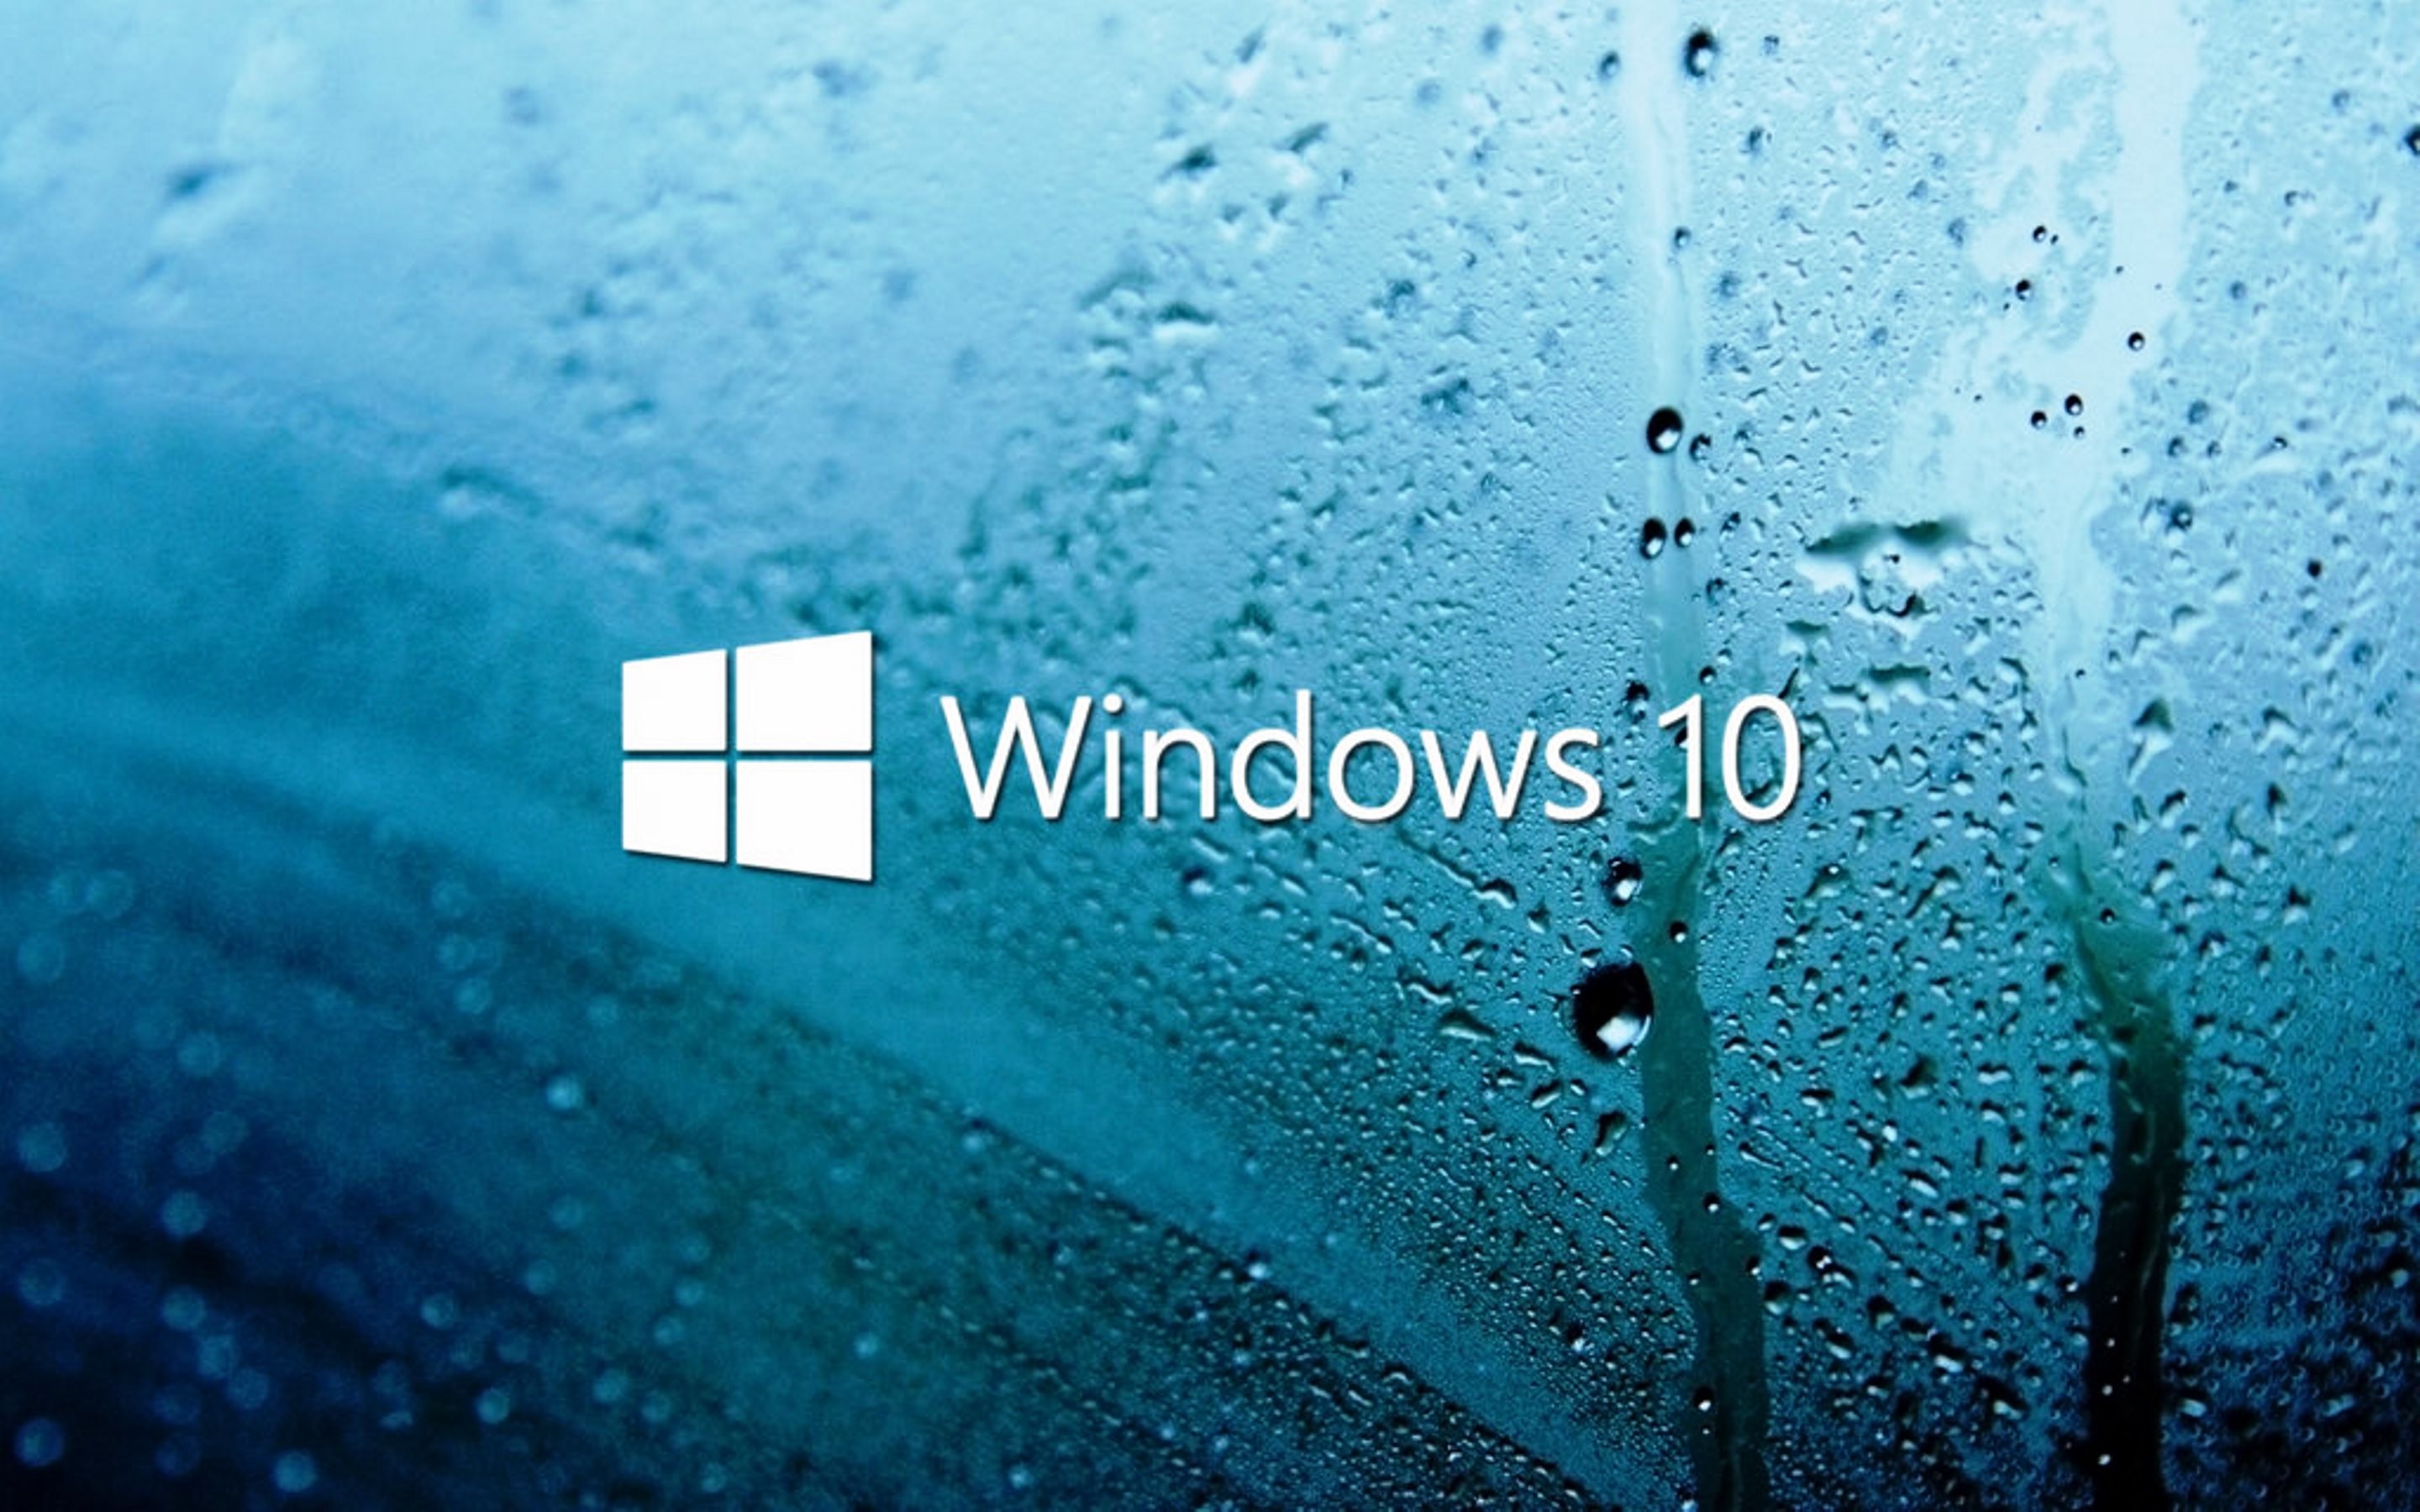 Bạn đã cập nhật cho mình phiên bản mới nhất của Windows 10? Hãy tải ngay những hình nền mới nhất của Windows 10 để thể hiện sự hiện đại và phong cách của mình. Với những hình ảnh đa dạng và độ phân giải cao, bạn có thể thỏa sức tùy chỉnh theo ý thích của mình để tạo nên một màn hình máy tính độc đáo và tuyệt vời.